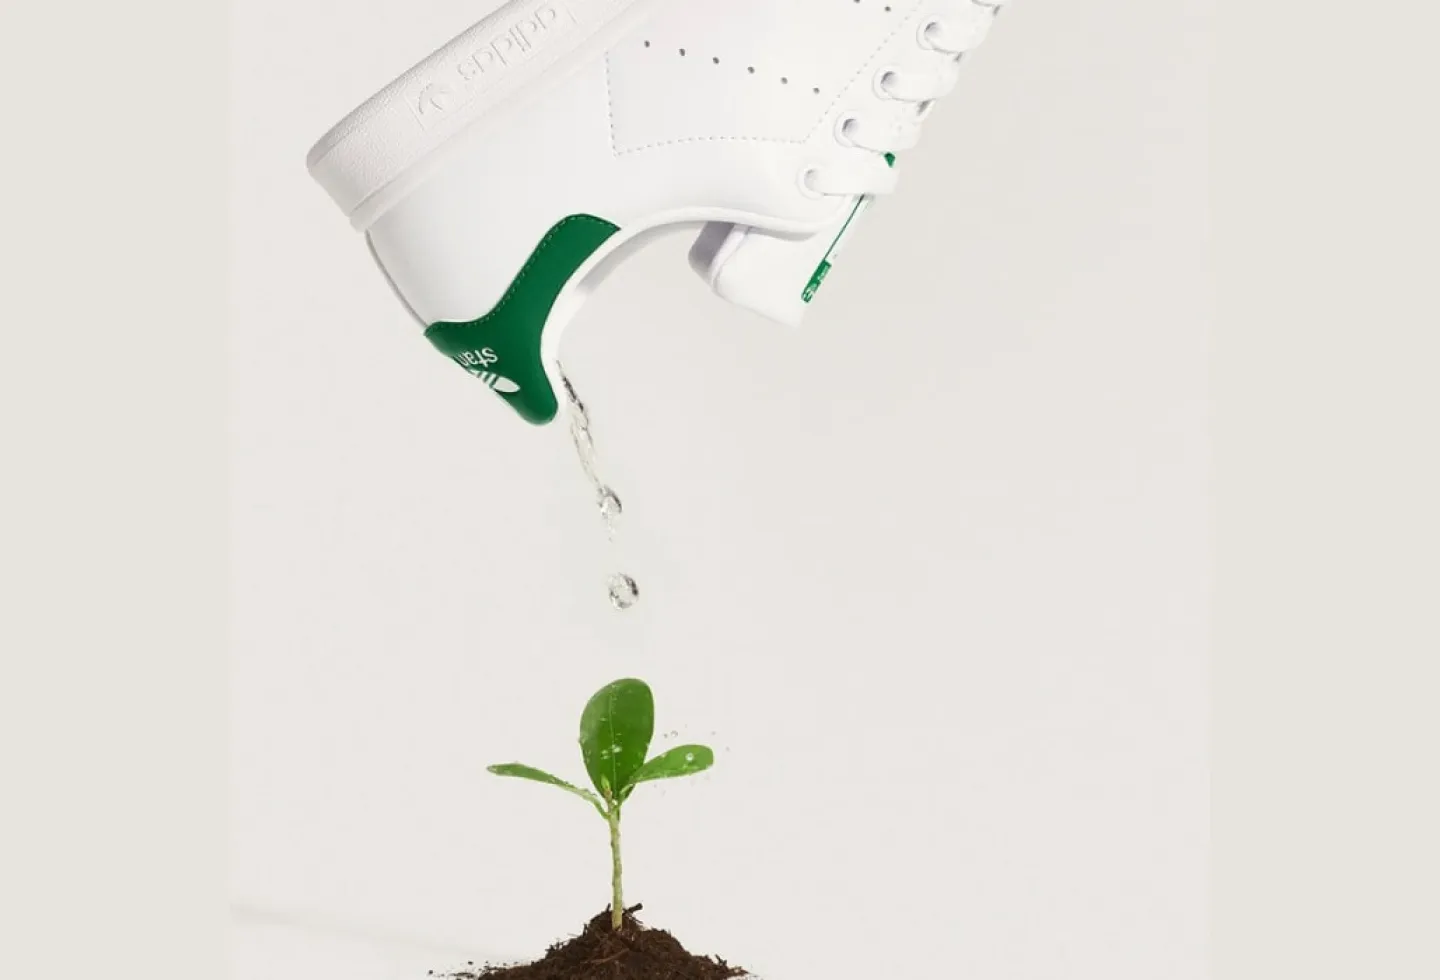 Image: Adidas Sustainability